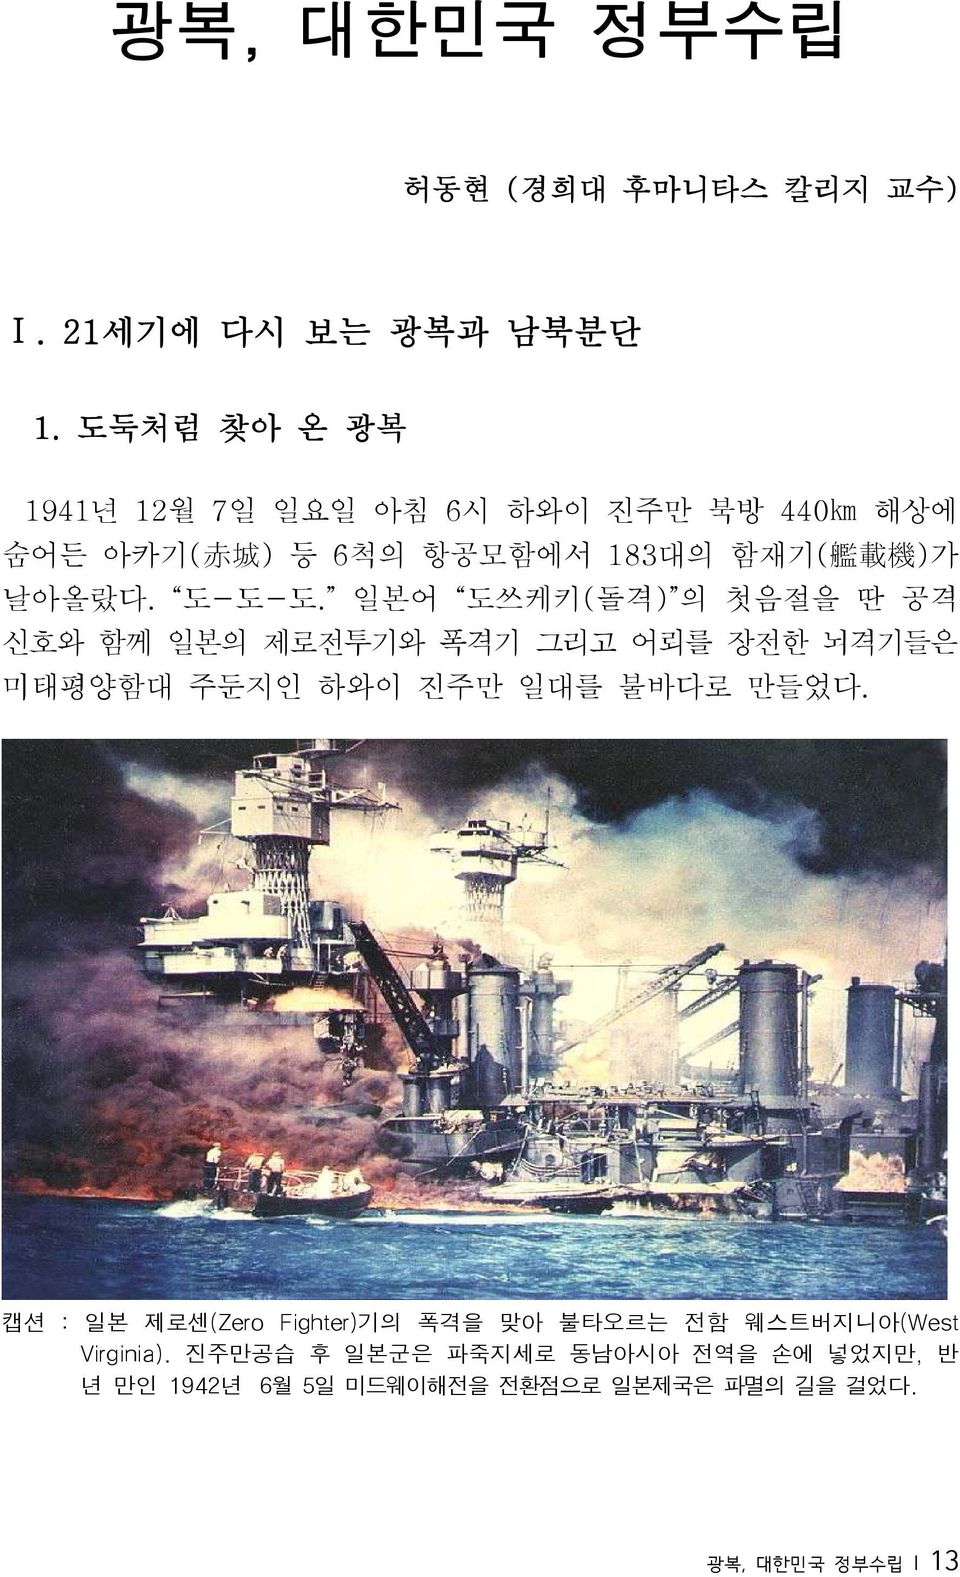 도-도-도. 일본어 도쓰케키(돌격) 의 첫음절을 딴 공격 신호와 함께 일본의 제로전투기와 폭격기 그리고 어뢰를 장전한 뇌격기들은 미태평양함대 주둔지인 하와이 진주만 일대를 불바다로 만들었다.